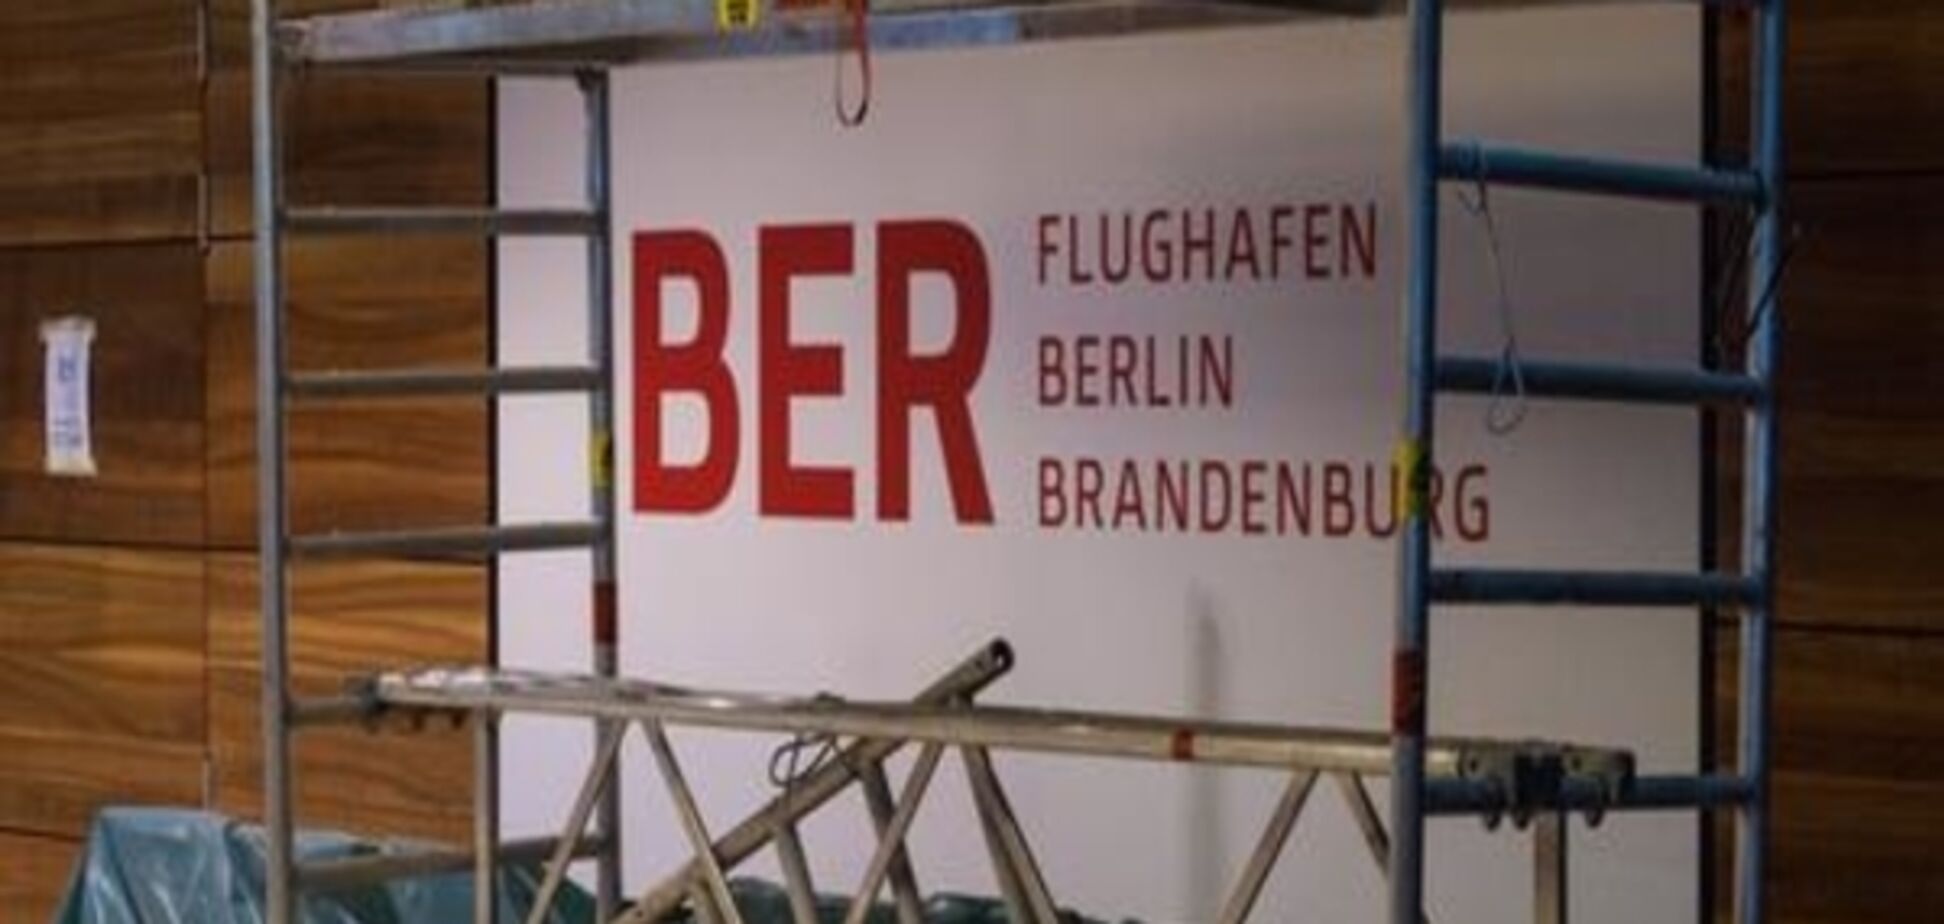 Очільник будівництва Берлінського аеропорту 'втратив довіру'